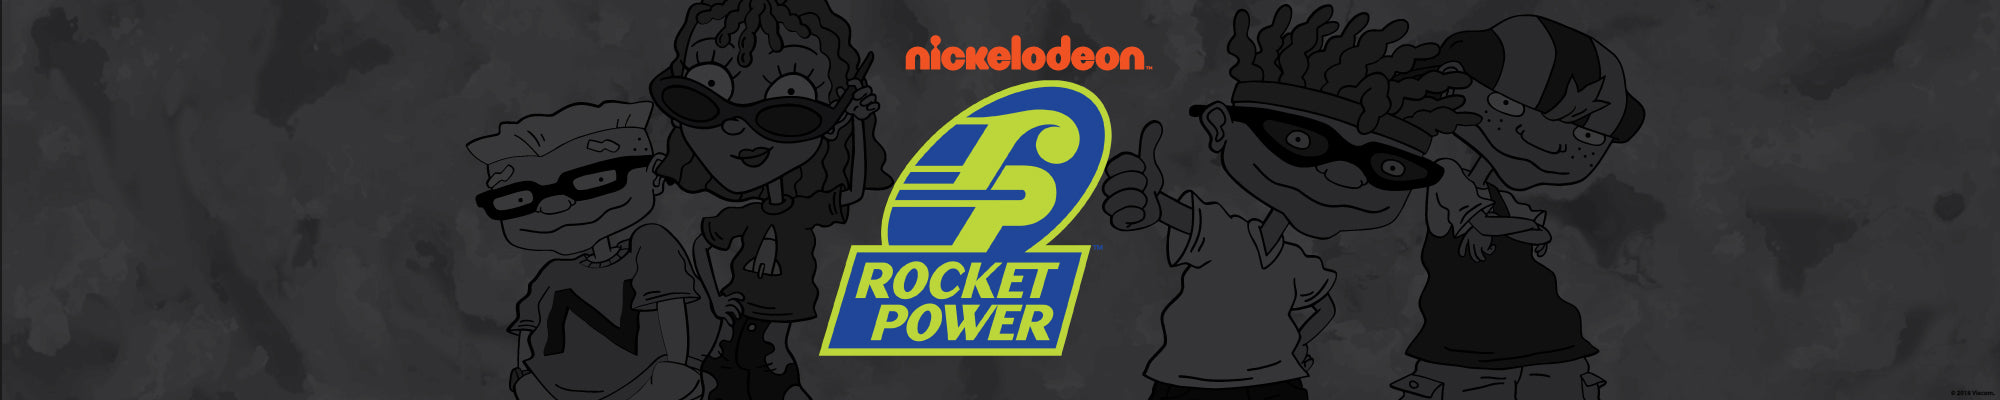 Rocket Power